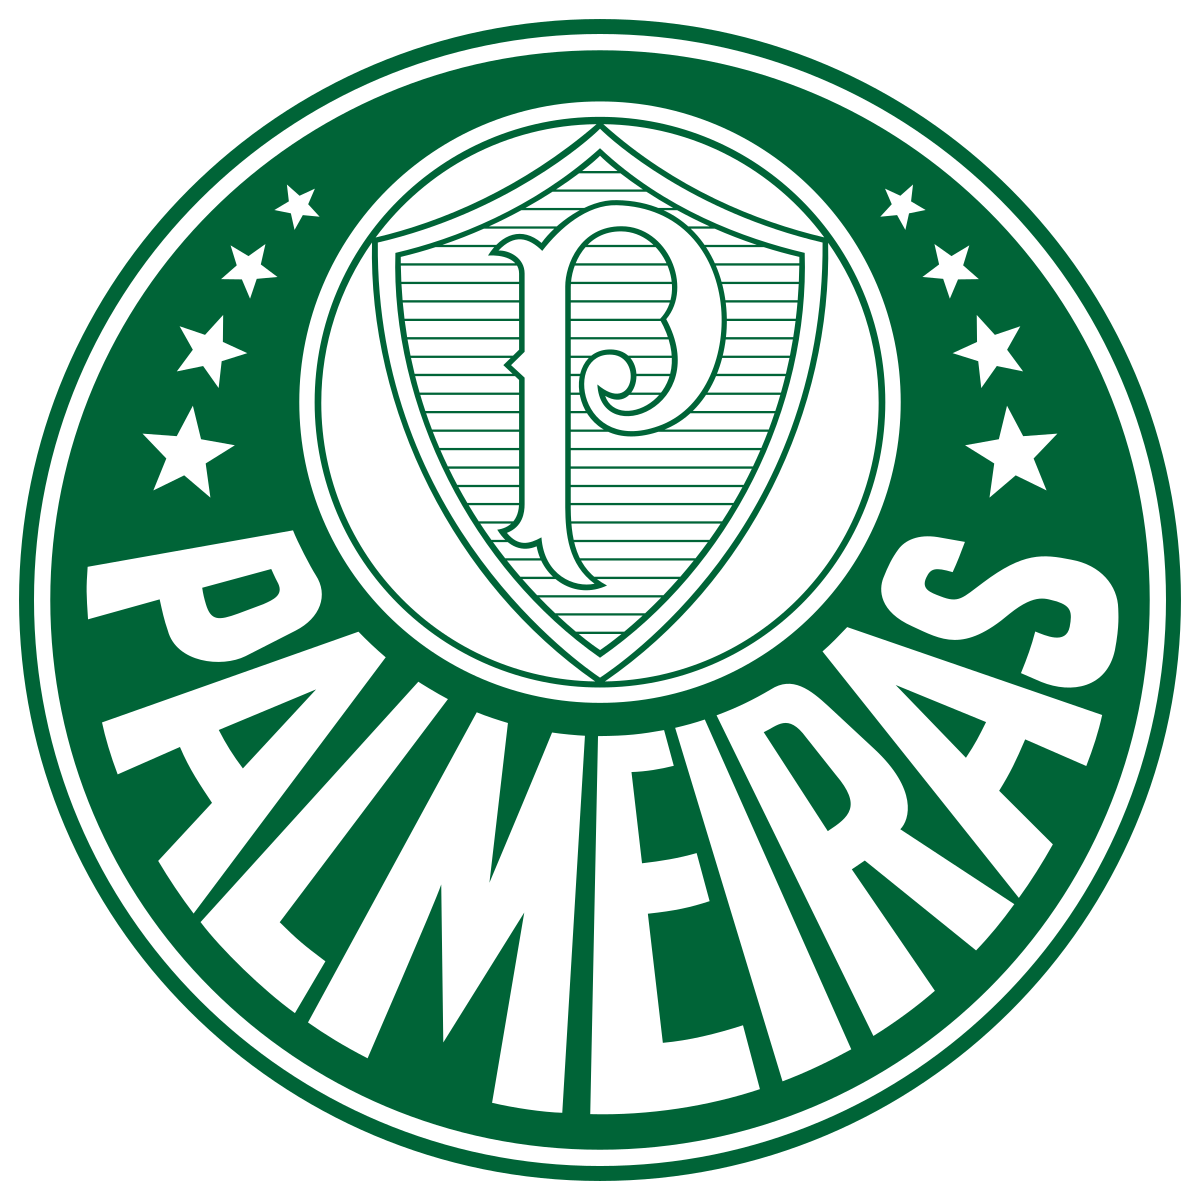 SE Palmeiras (Bambino)